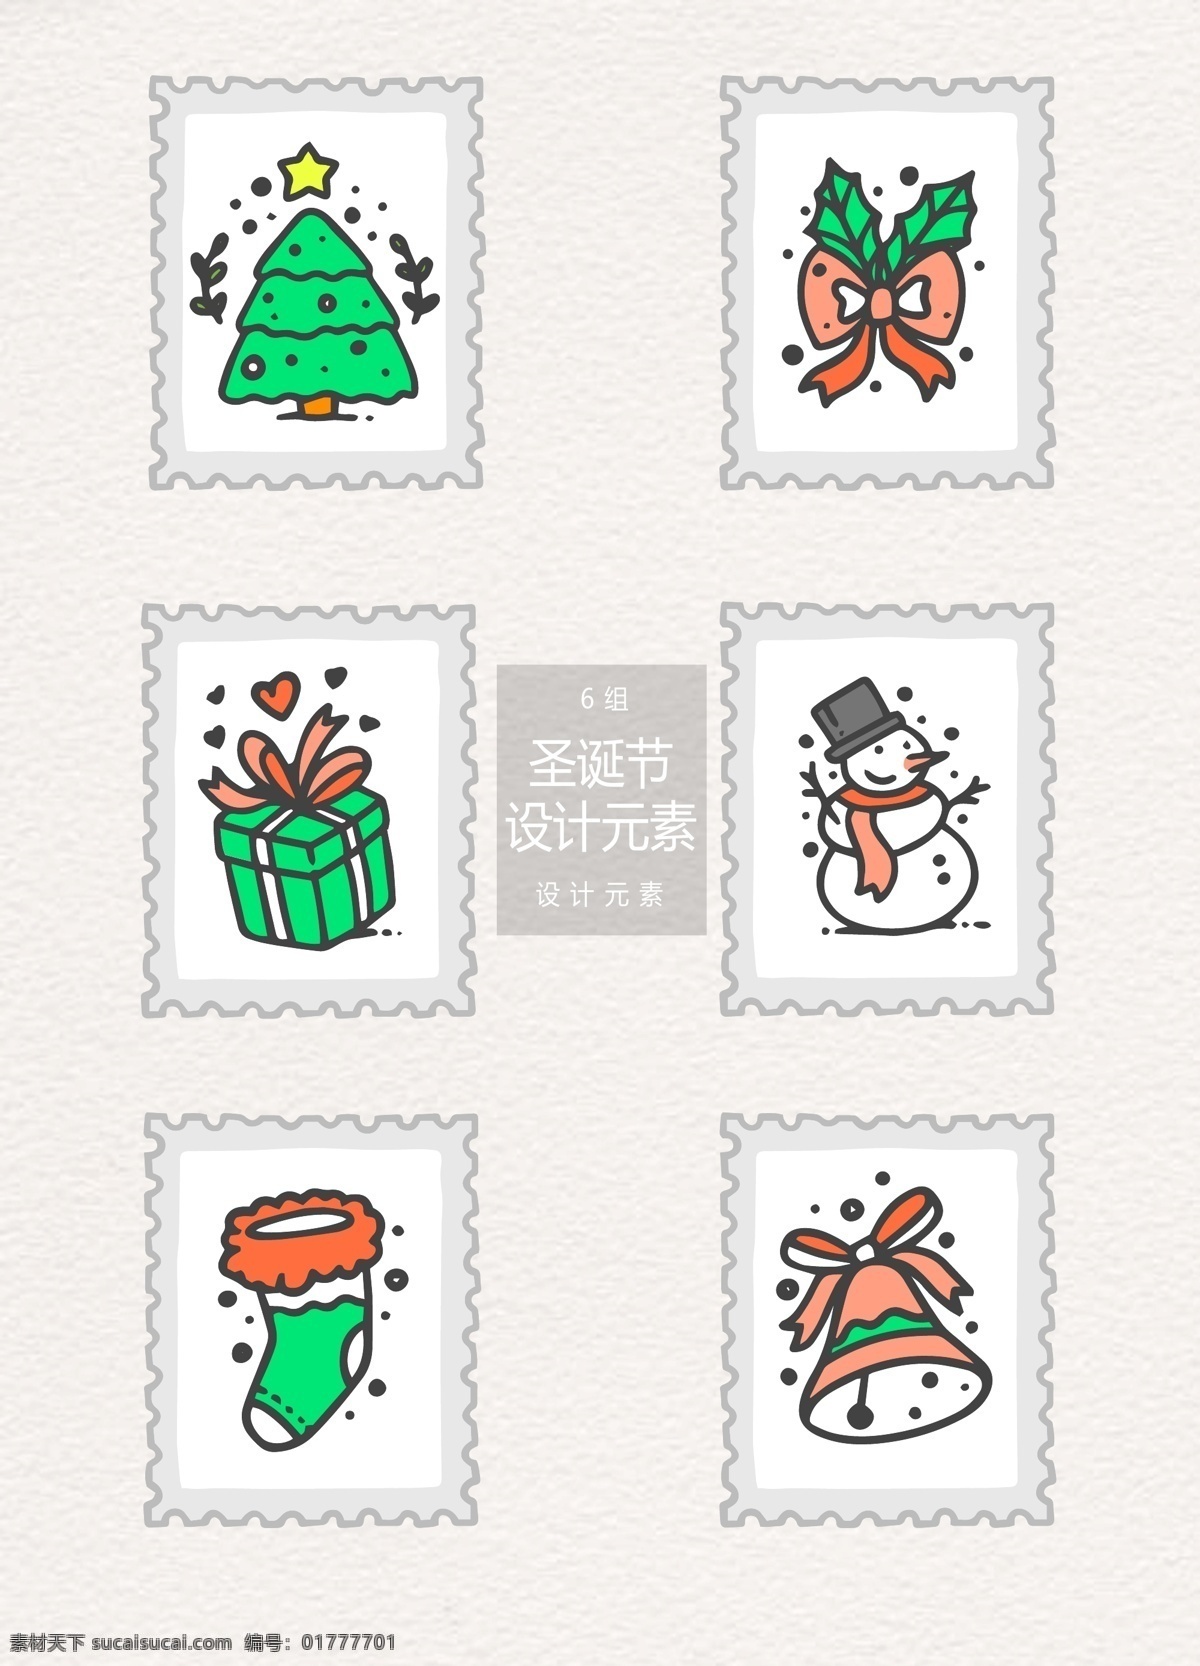 手绘 圣诞节 邮票 标签 元素 圣诞树 蝴蝶结 礼物盒 礼物 设计元素 圣诞 圣诞标签 圣诞节邮票 雪人 圣诞袜 袜子 铃铛